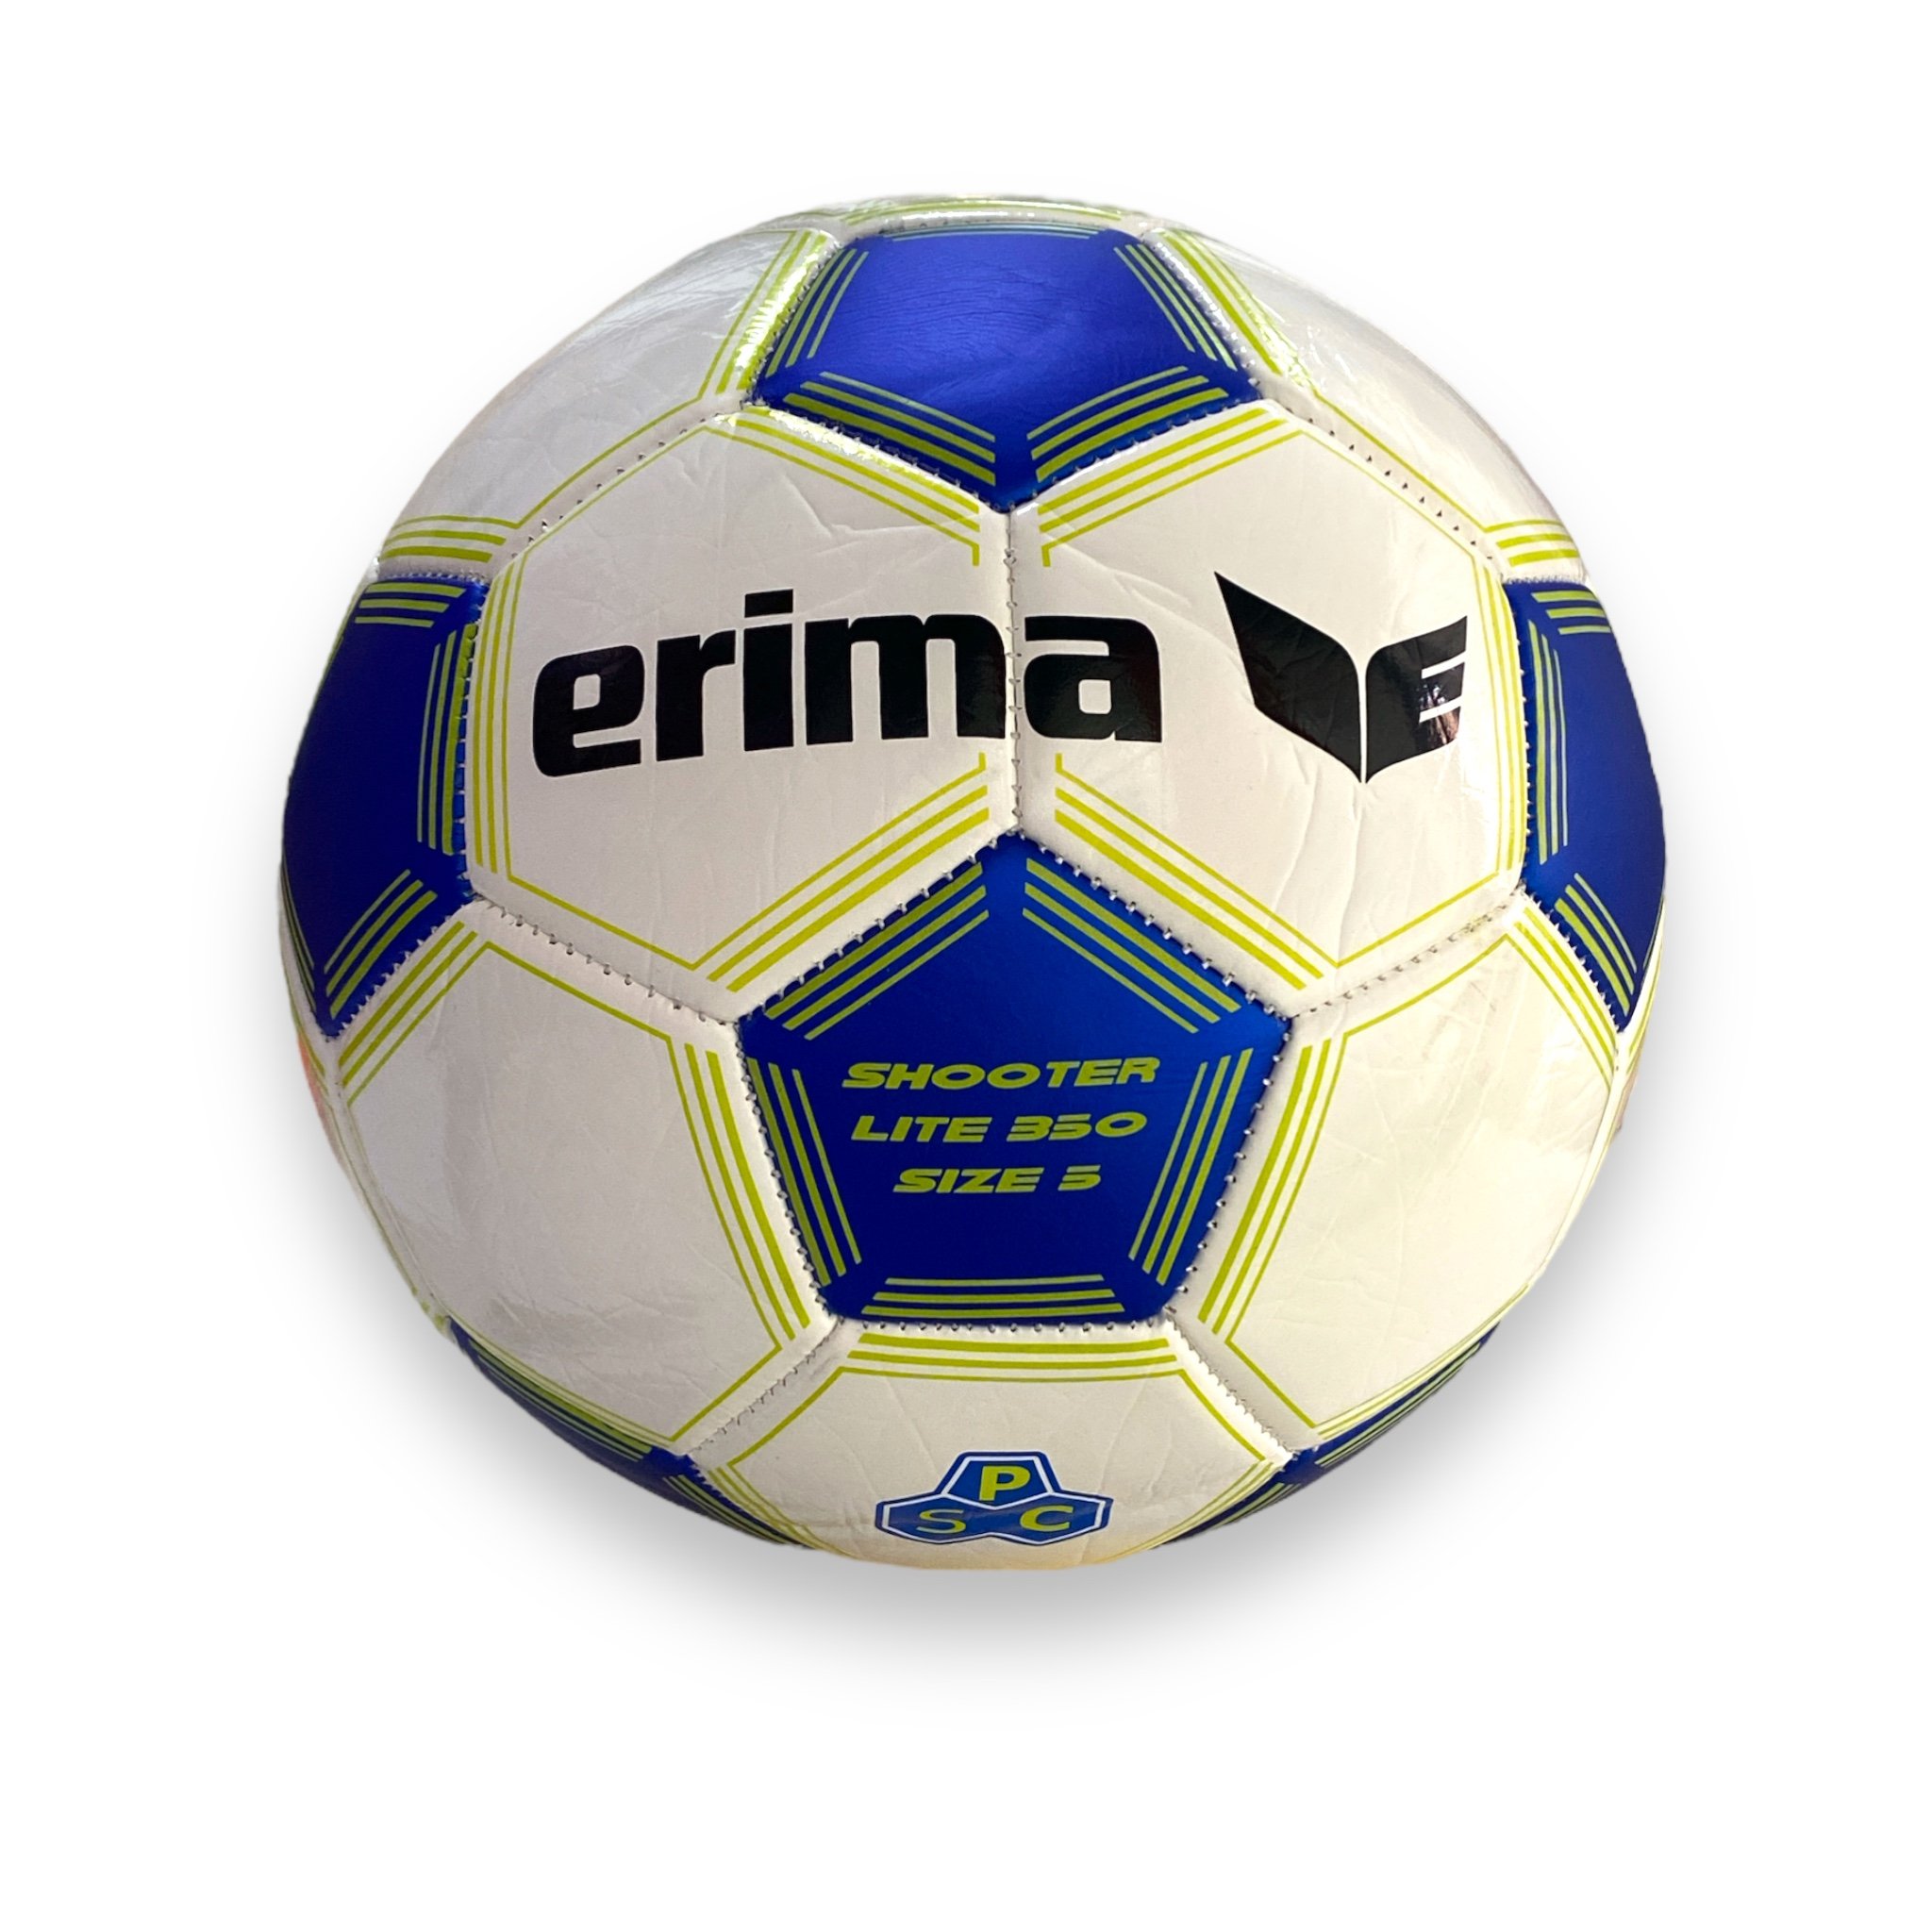 Erima Shooter Lite 350 Antrenman Futbol Topu No:5 - Mavi Beyaz